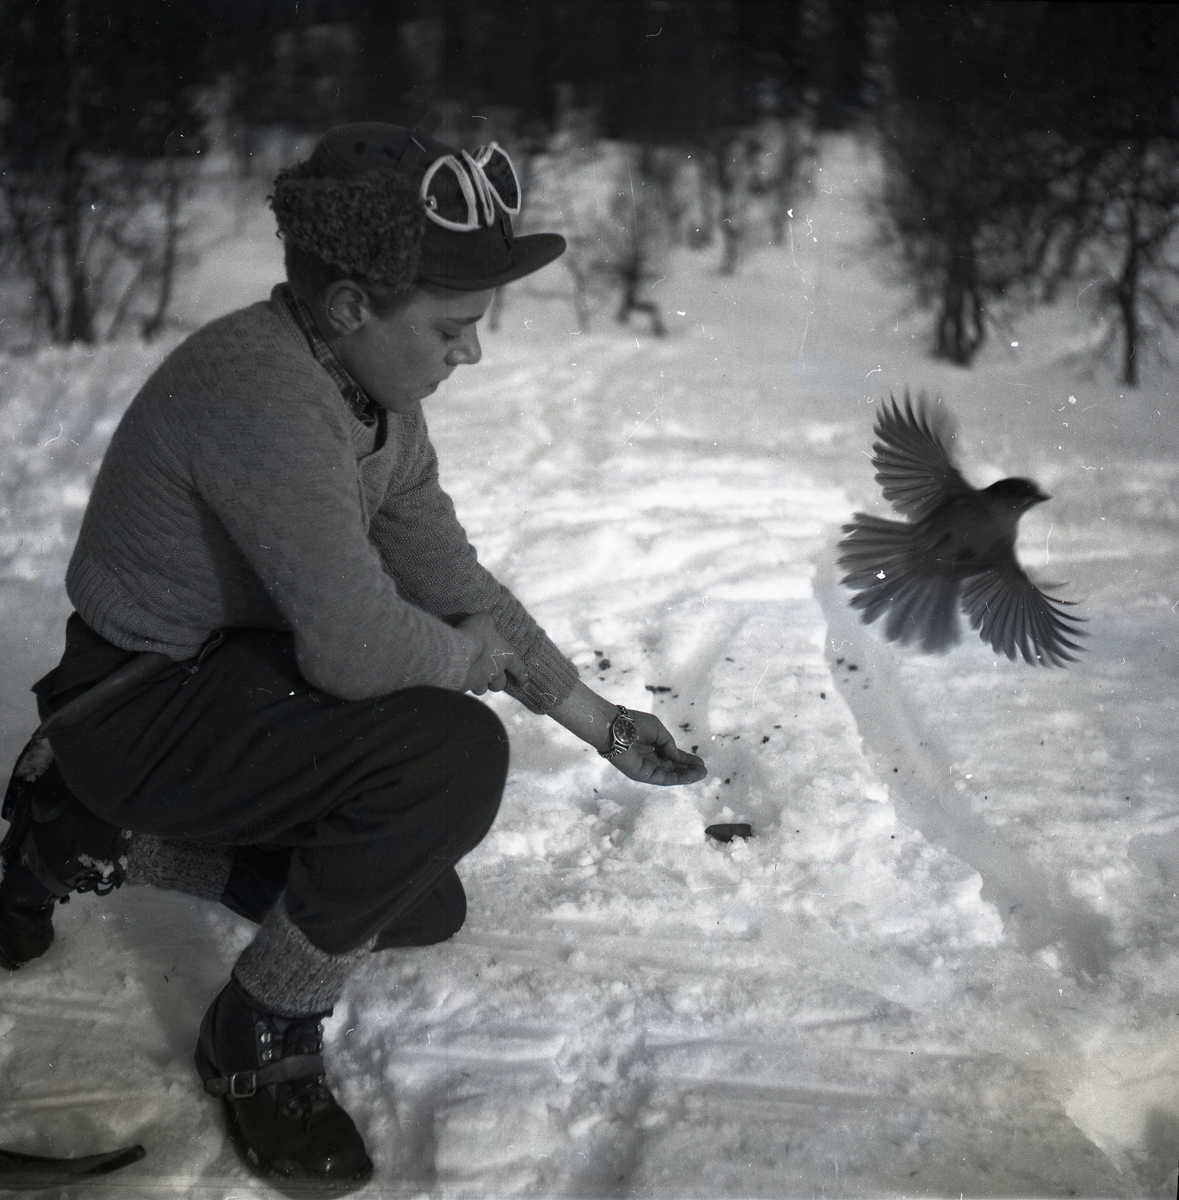 En pojke sitter i snön och en lavskrika har precis flugit iväg från hans hand, Åre den 26 februari 1953.